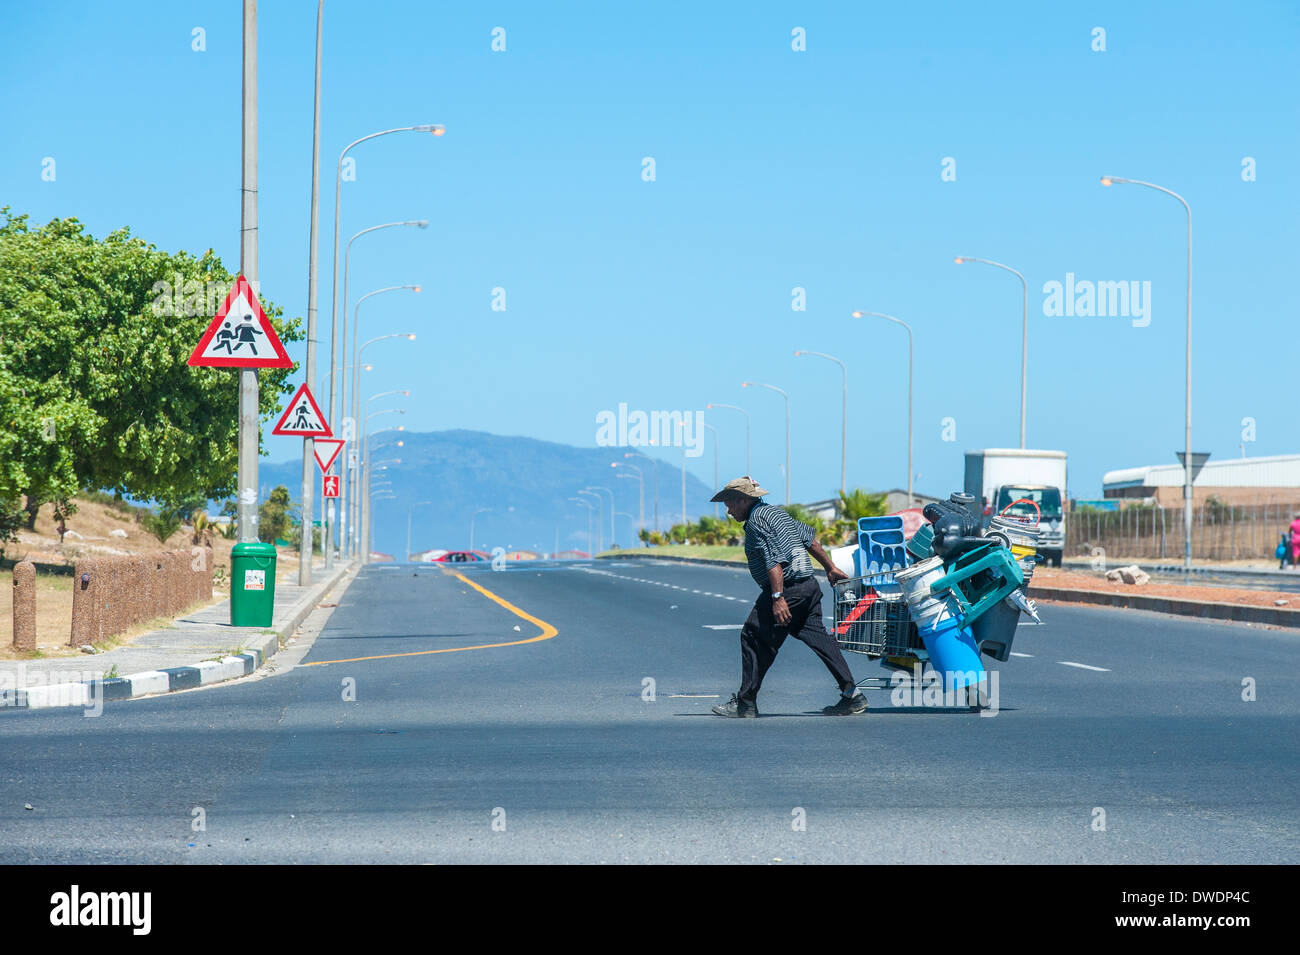 Uomo con carrello la raccolta di materiali in plastica per fare una vita, Mitchell's Plain, Cape Town, Sud Africa Foto Stock